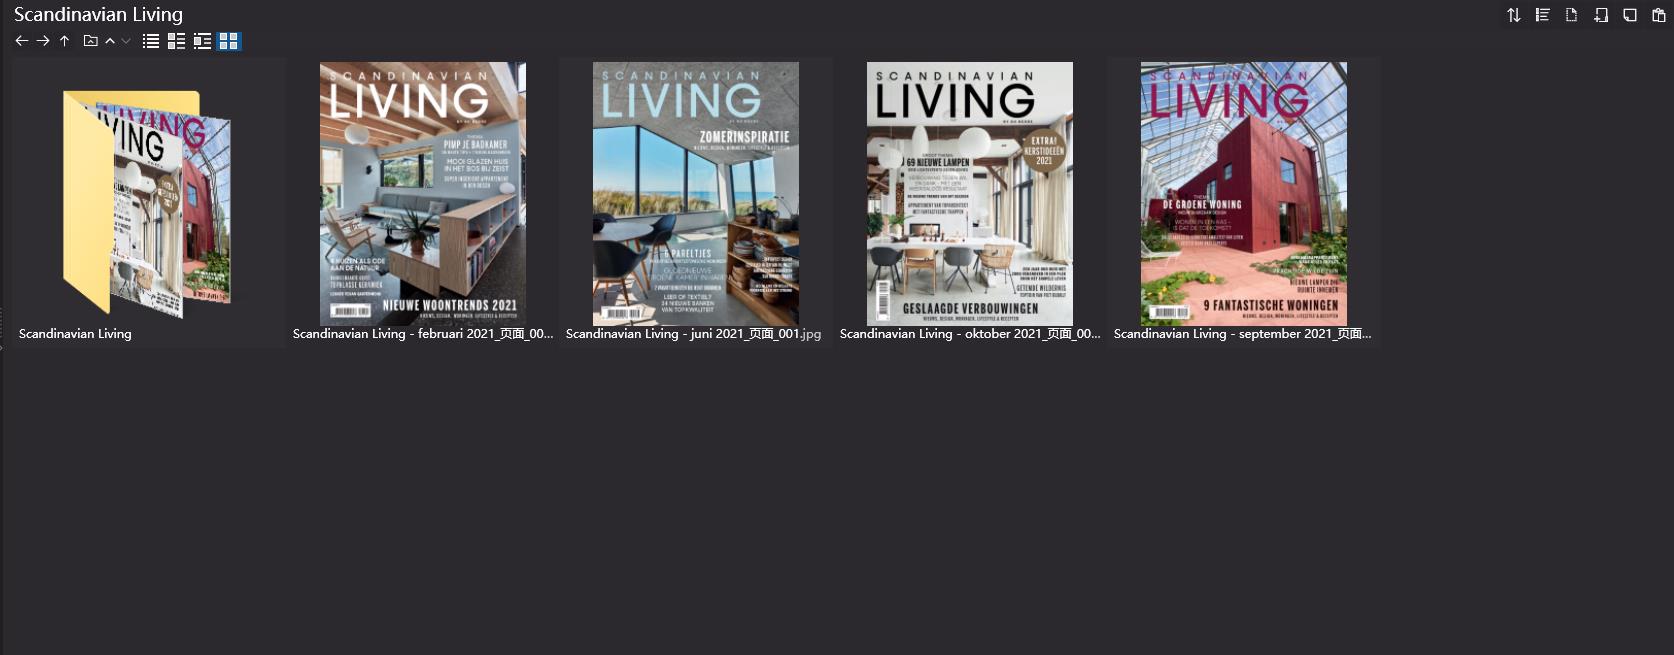 室内设计杂志LIVING,软装设计杂志LIVING,室内设计杂志,软装设计杂志,LIVING设计电子杂志,杂志下载,LIVING杂志合集